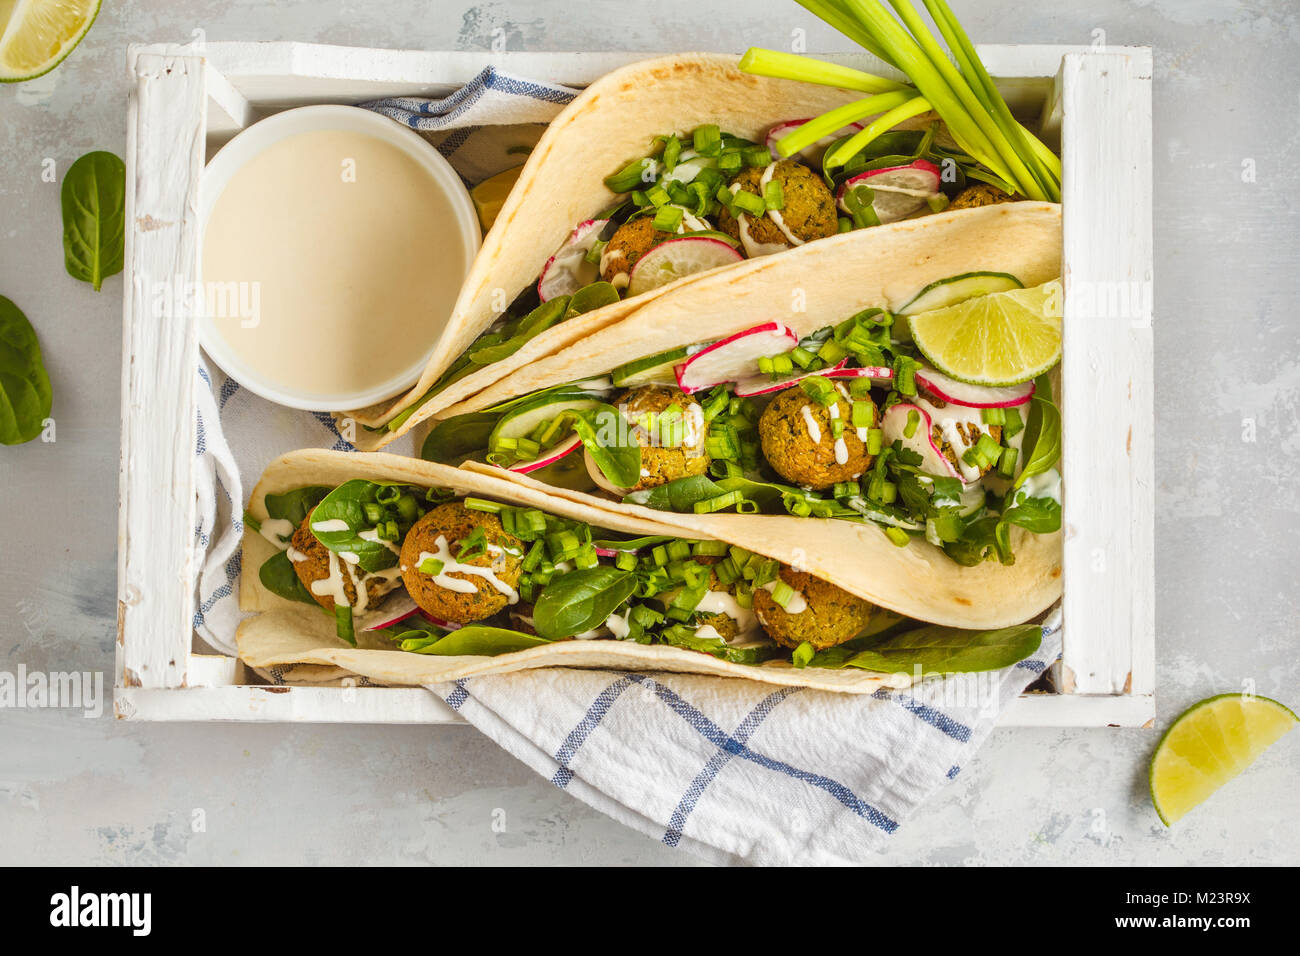 Falafels végétaliens avec légumes et sauce tahini dans la tortilla dans une boîte en bois blanc pour un pique-nique. Vegan aliments sains, l'Arabe de la nourriture. Banque D'Images